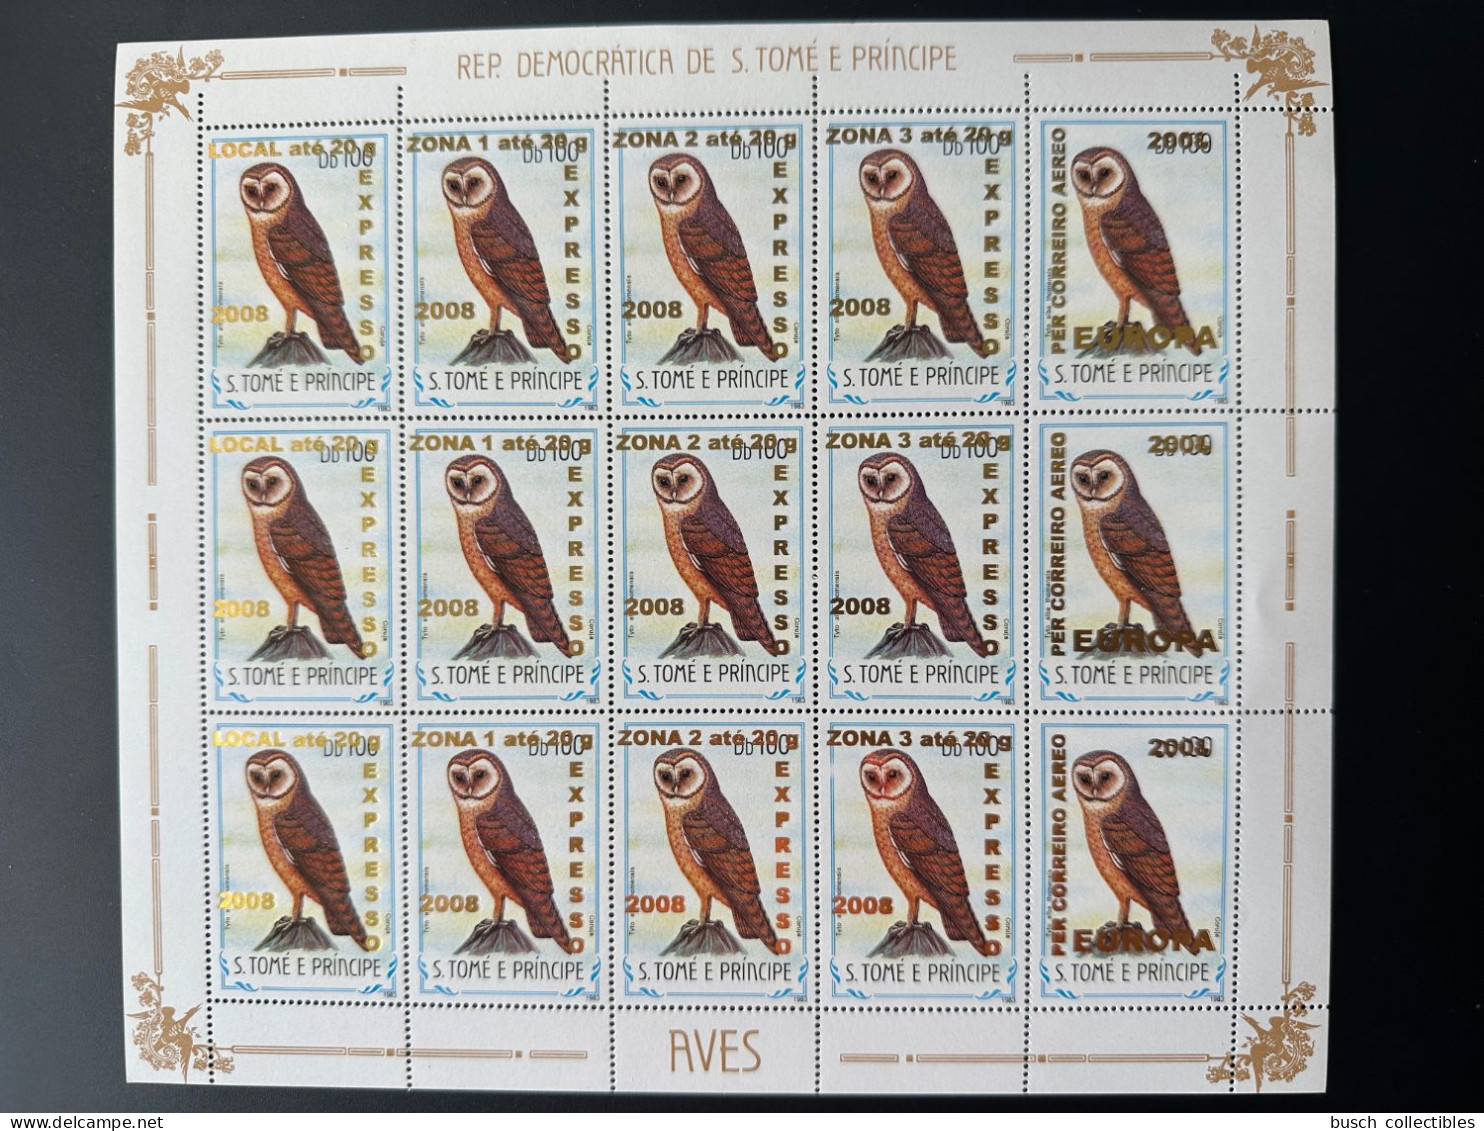 S. Tomé & Principe 2009 Mi. 3963 - 3966 + 3968 Sheet Oiseaux Birds Vögel Chouette Eule Owl Fauna Overprint Surcharge - Sao Tome Et Principe